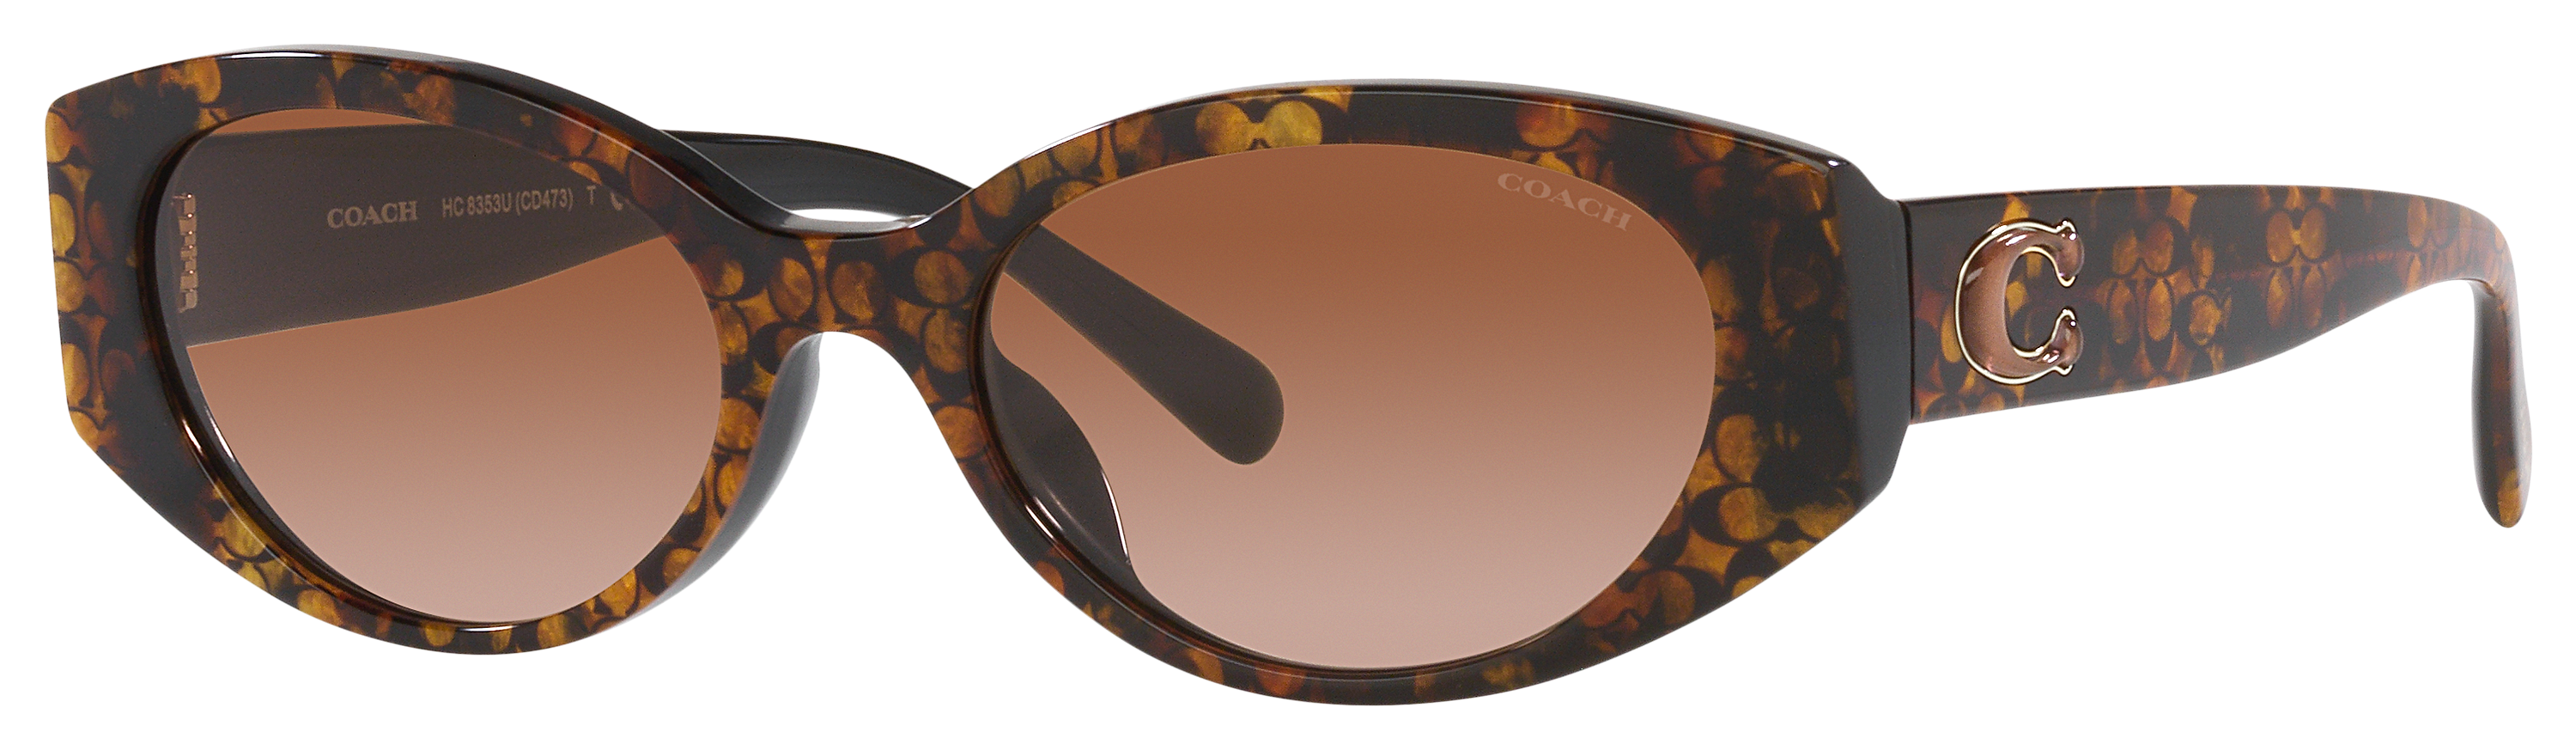 Coach HC8353U Sunglasses for Ladies - Pearlized Tortoise/Brown Gradient - Medium